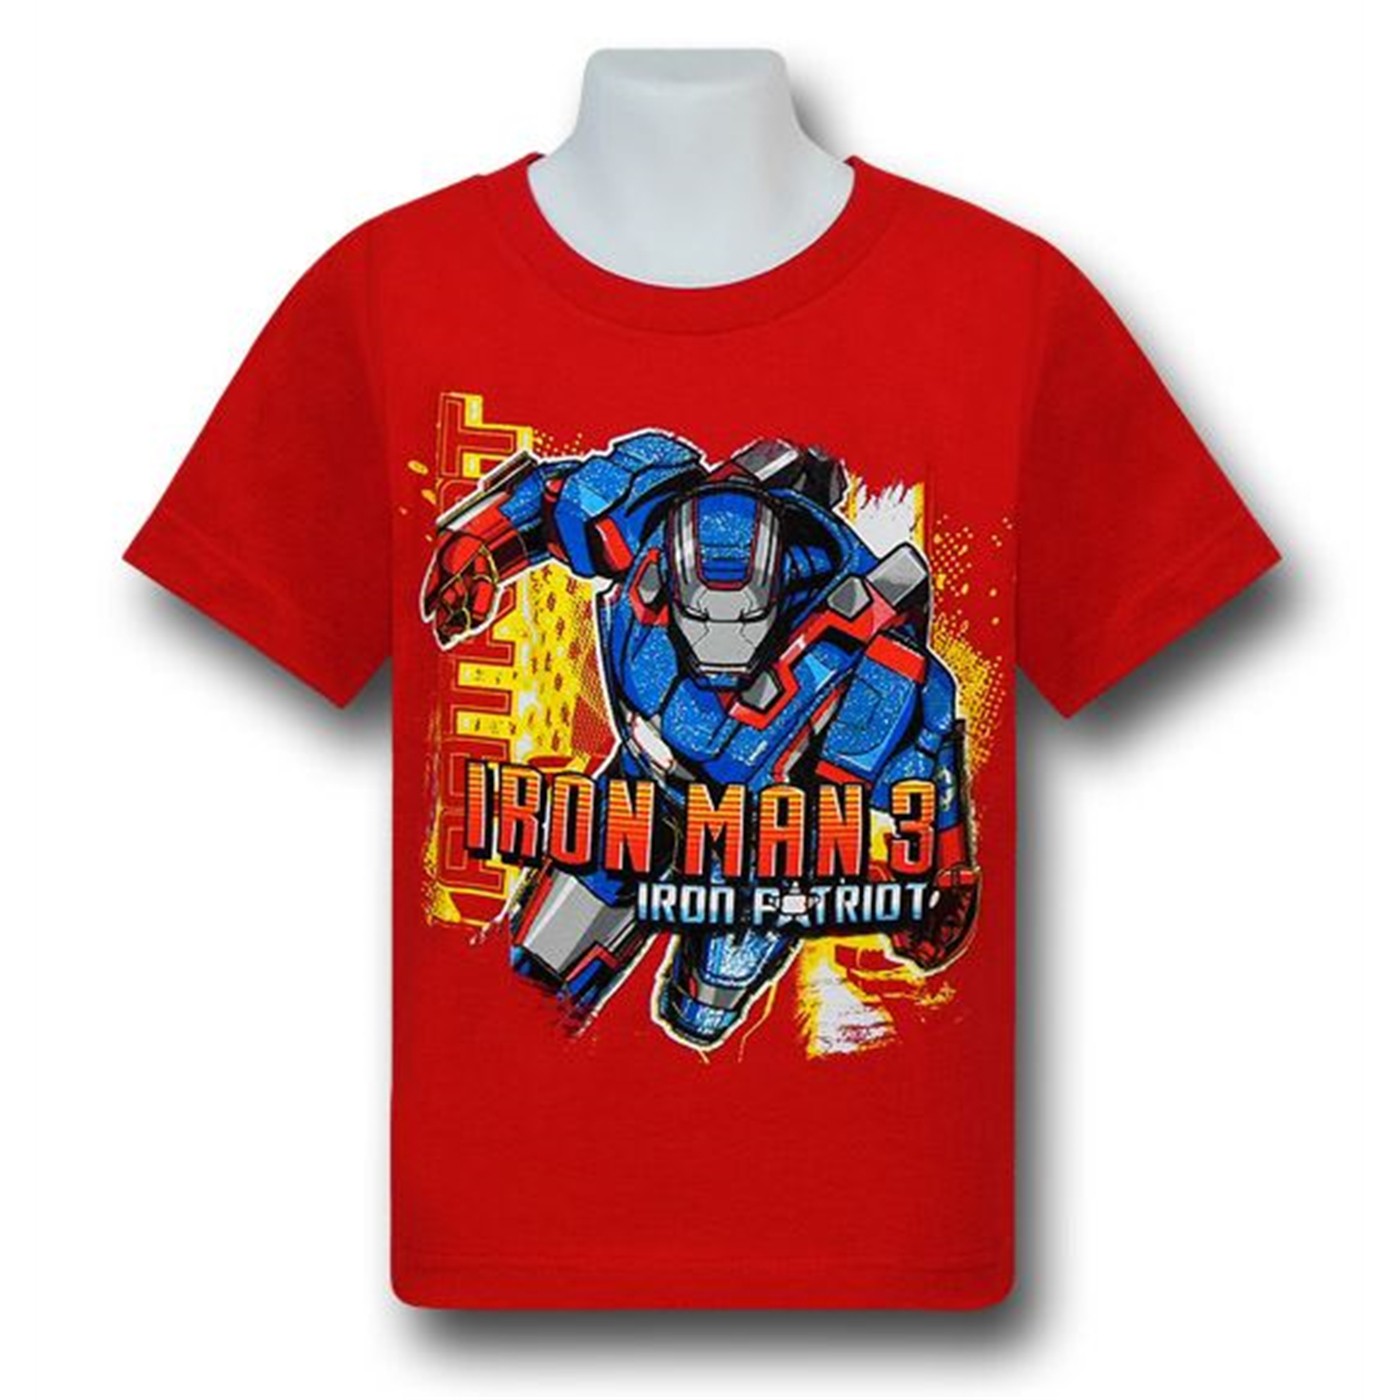 Iron Man 3 Iron Patriot Kids Red T-Shirt